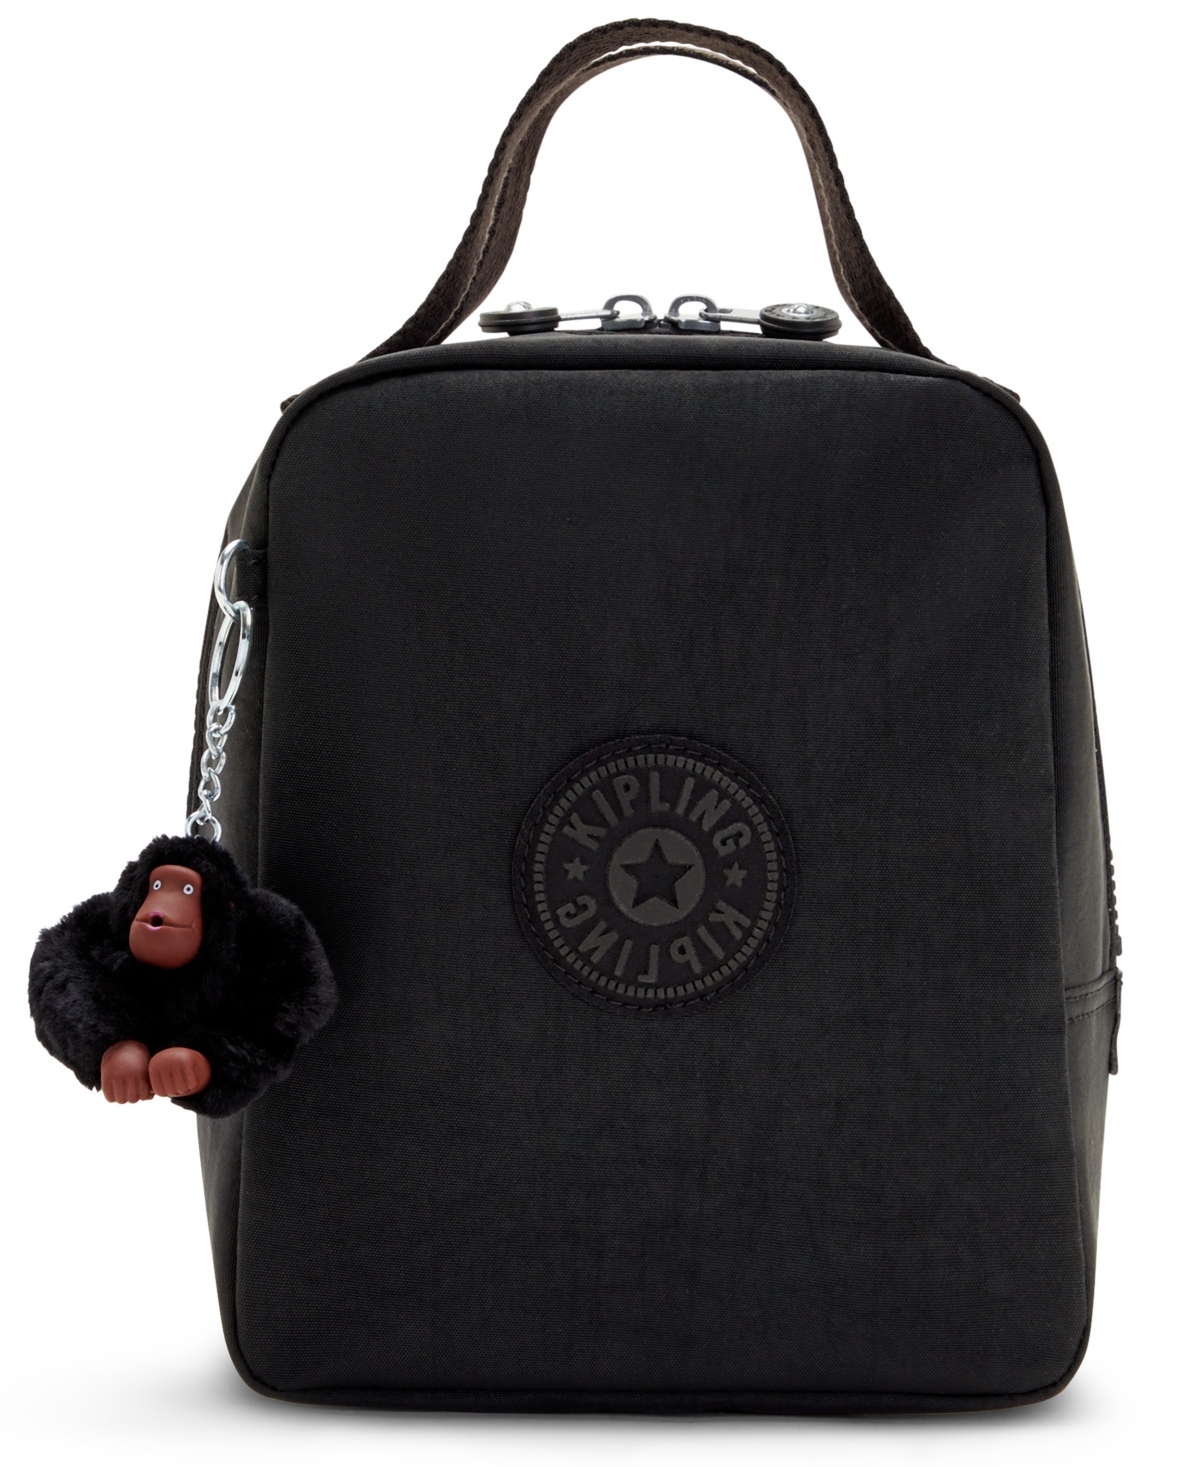 Kipling Lyla Insulated Lunch Bag In True Black